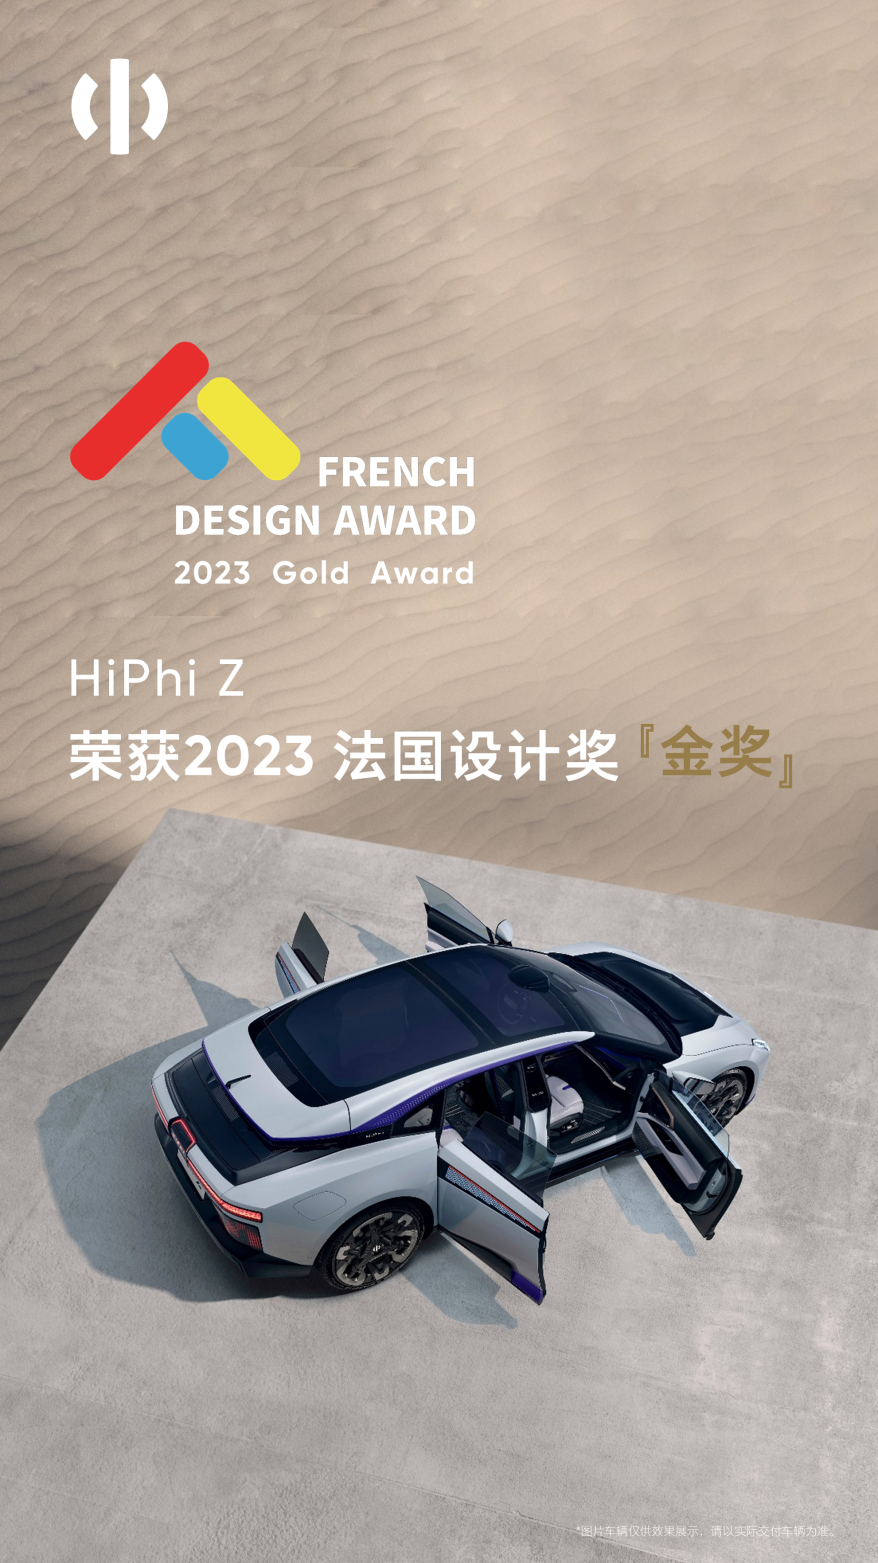 以设计魅力赢得世界认可高合HiPhi Z荣膺2023法国设计奖金奖- DoNews汽车